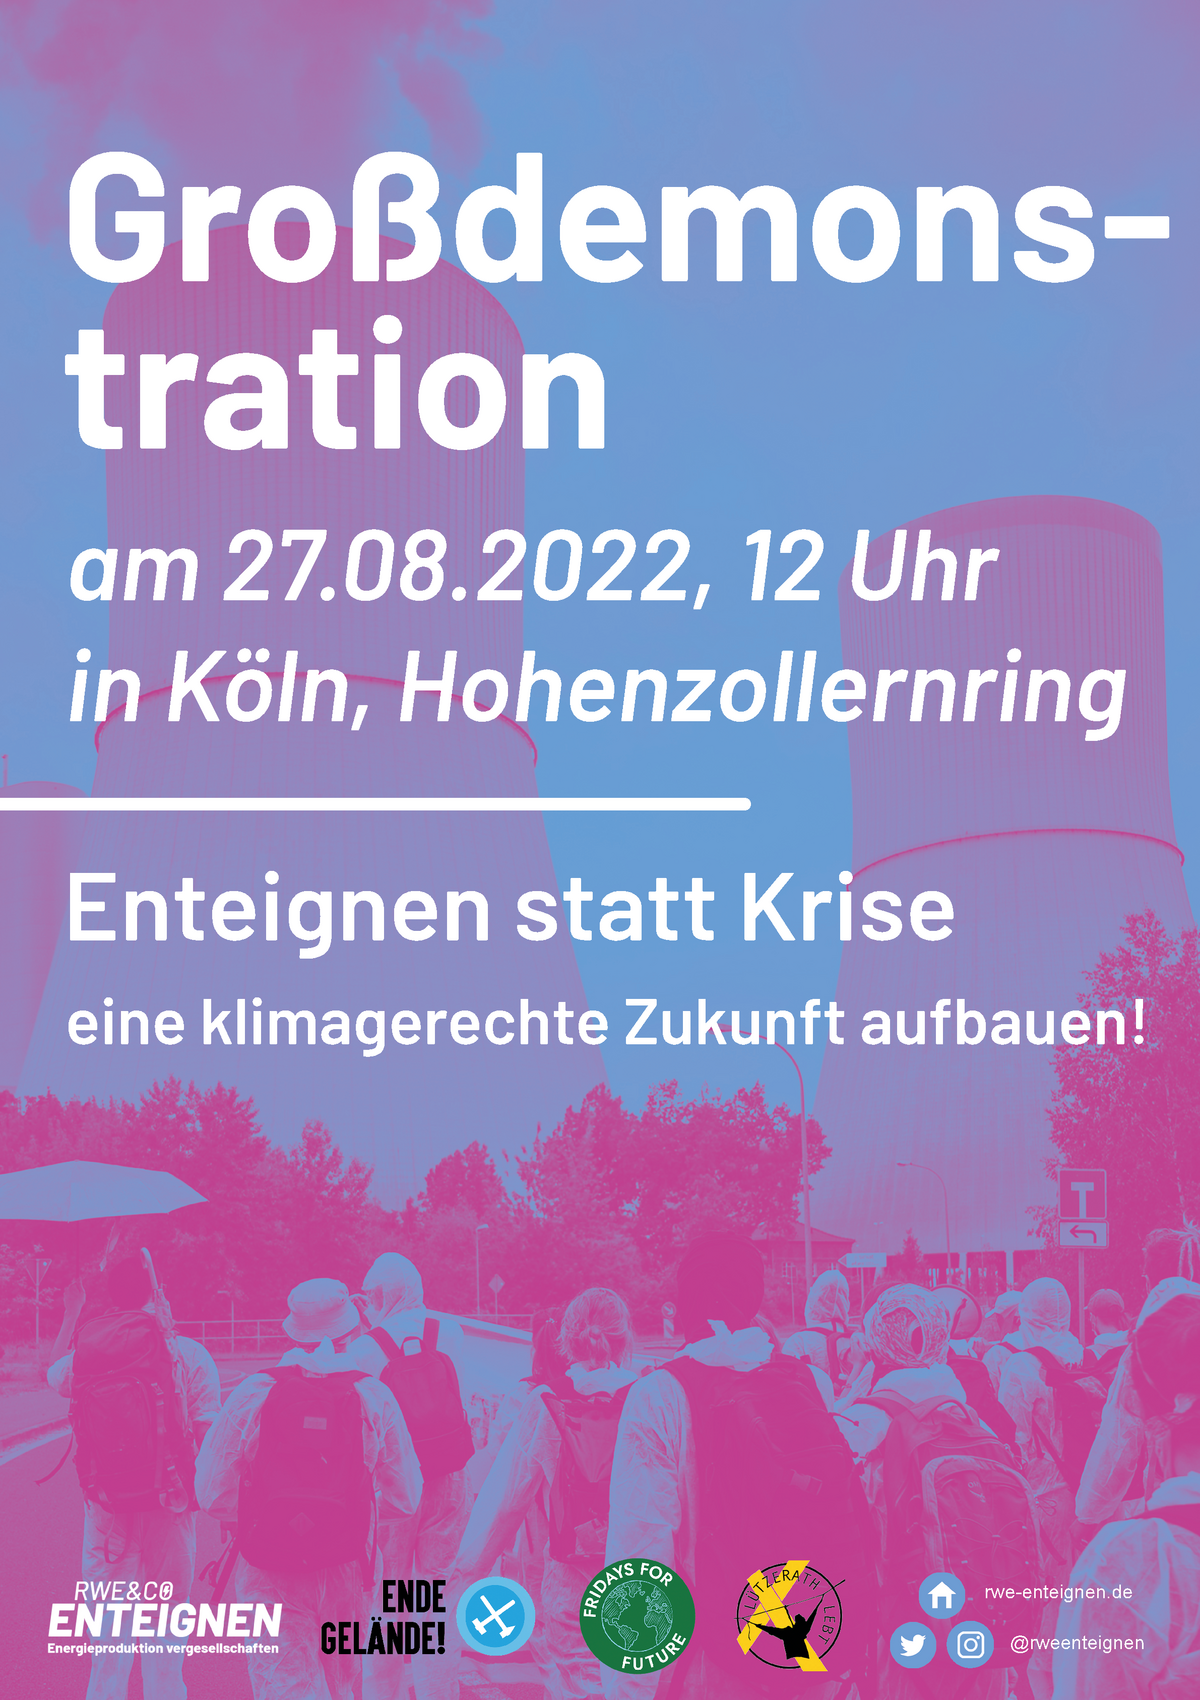 Mobilisierungsplakat zur Großdemo RWE und Co. Enteignen am 27.8. in Köln 